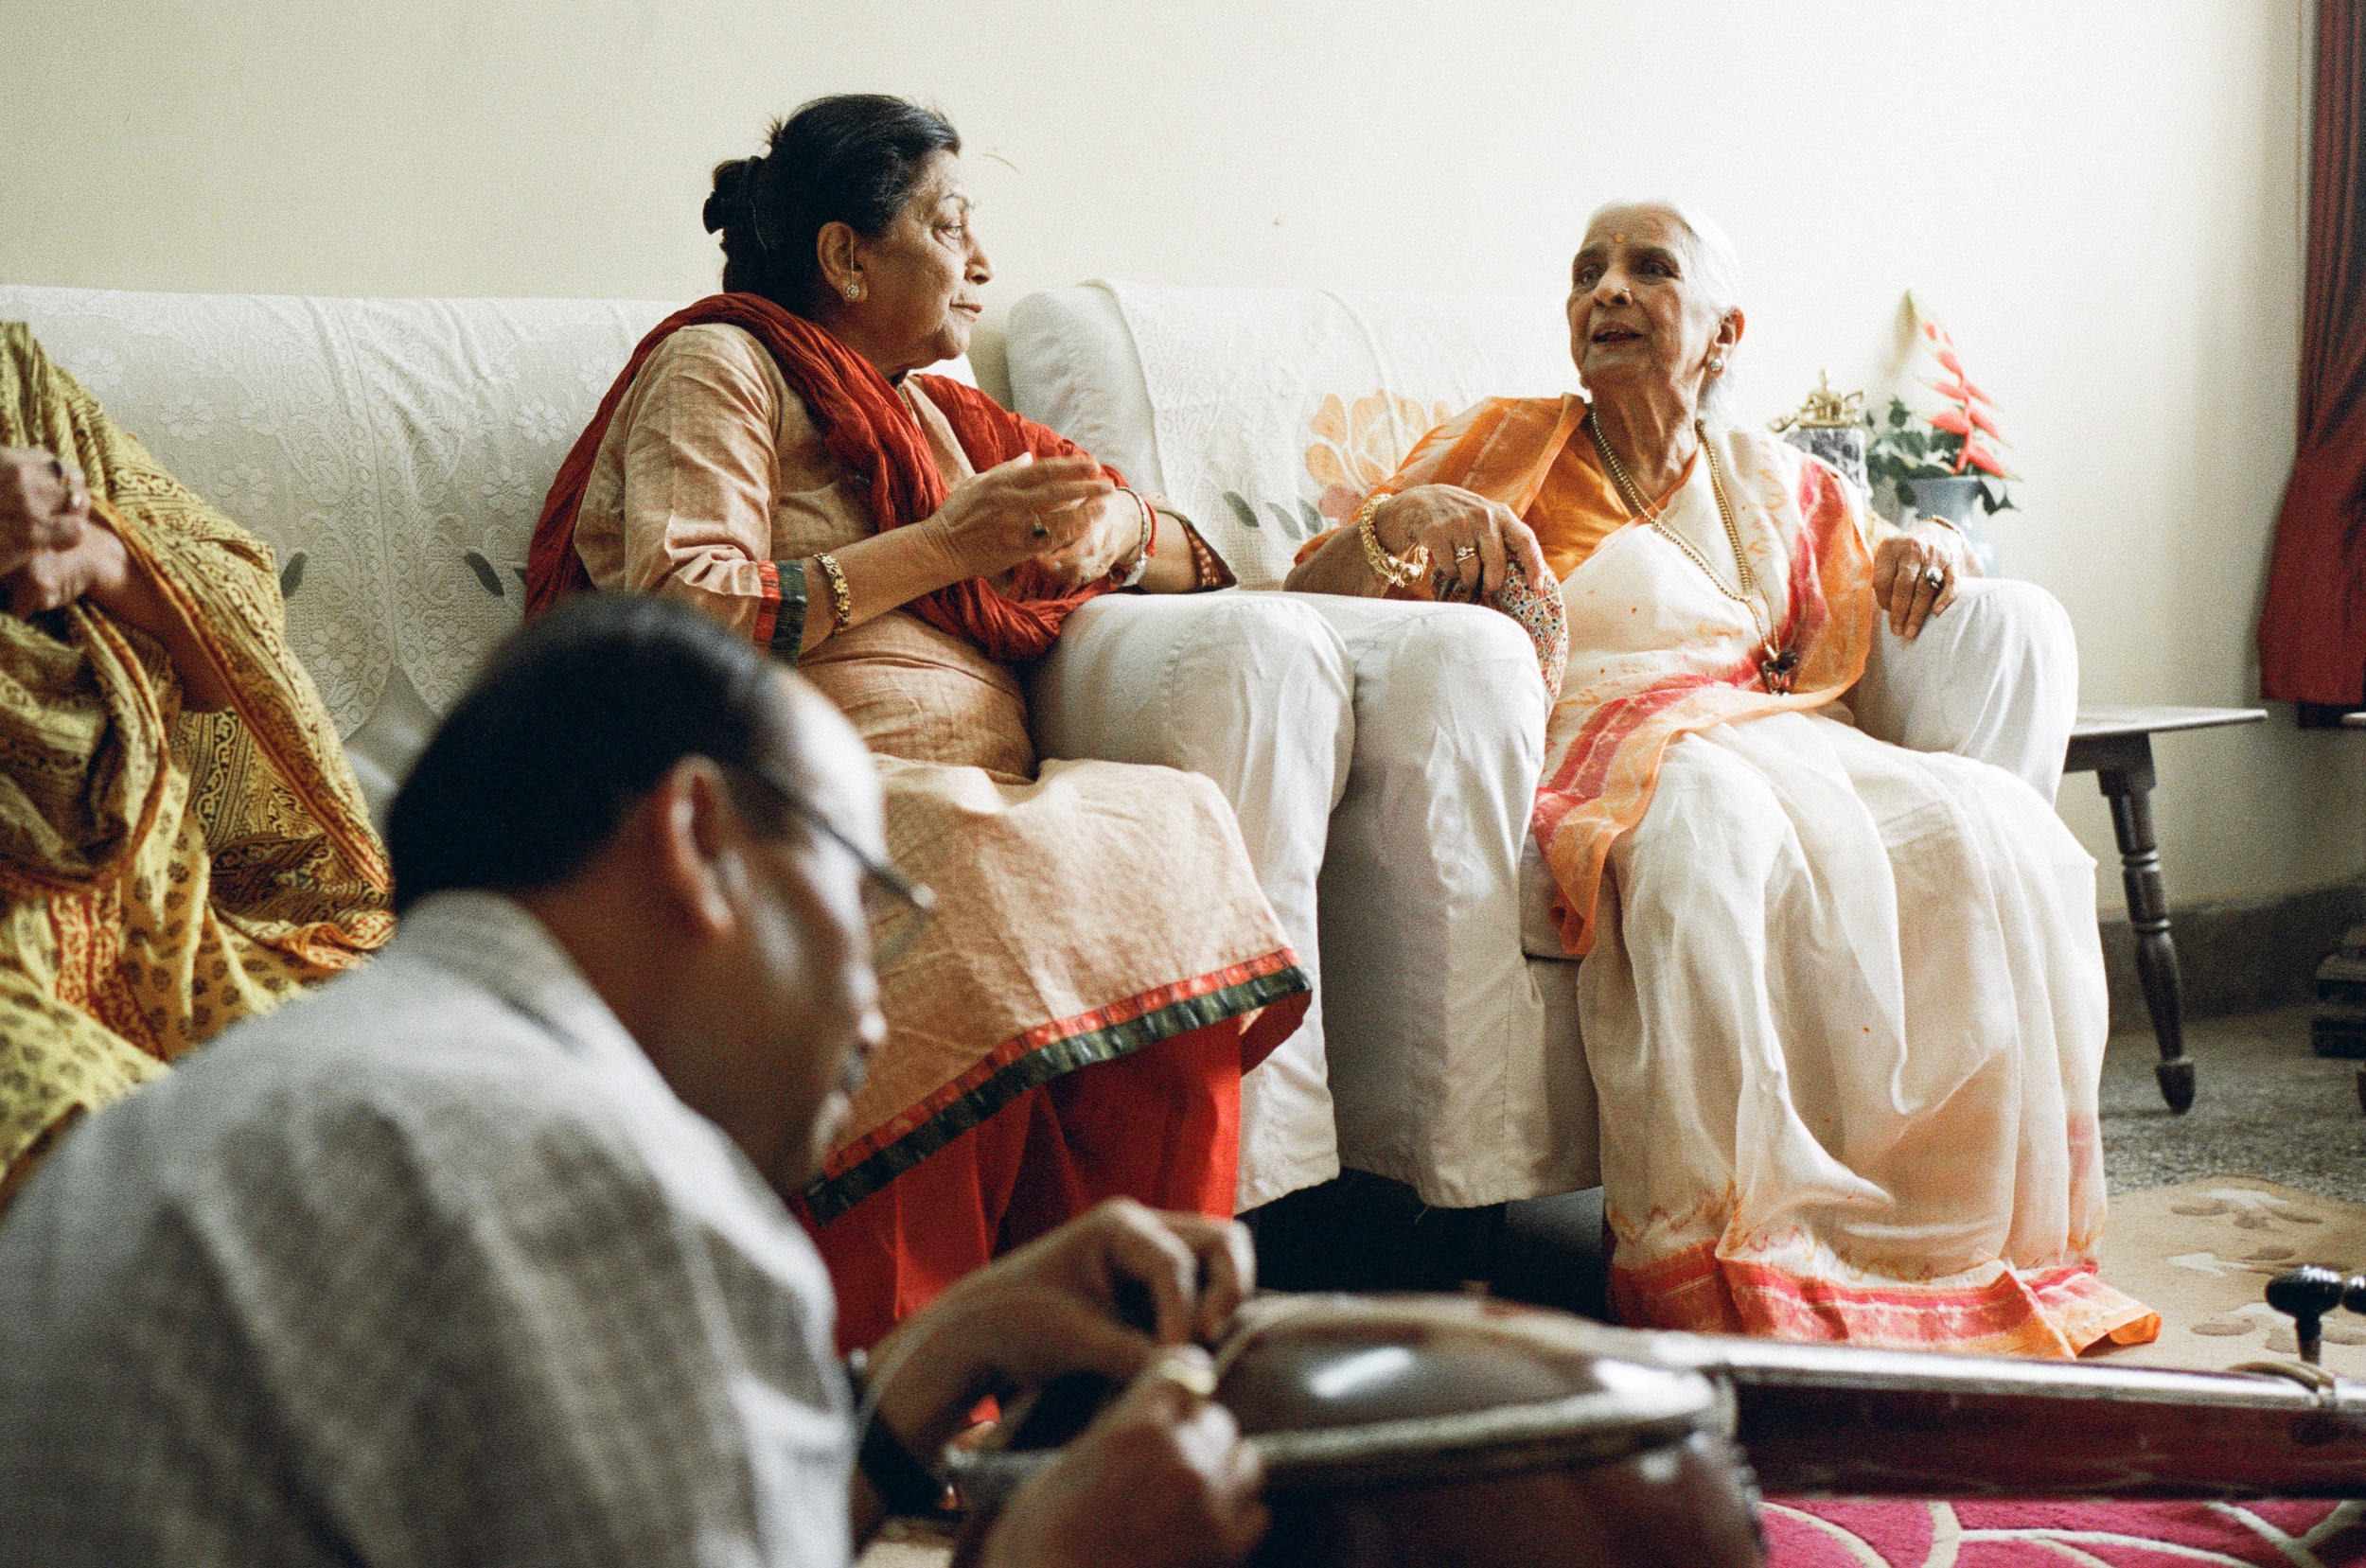  Girija Devi in the company of friends at her home in Varanasi  Varanasi, 2017 